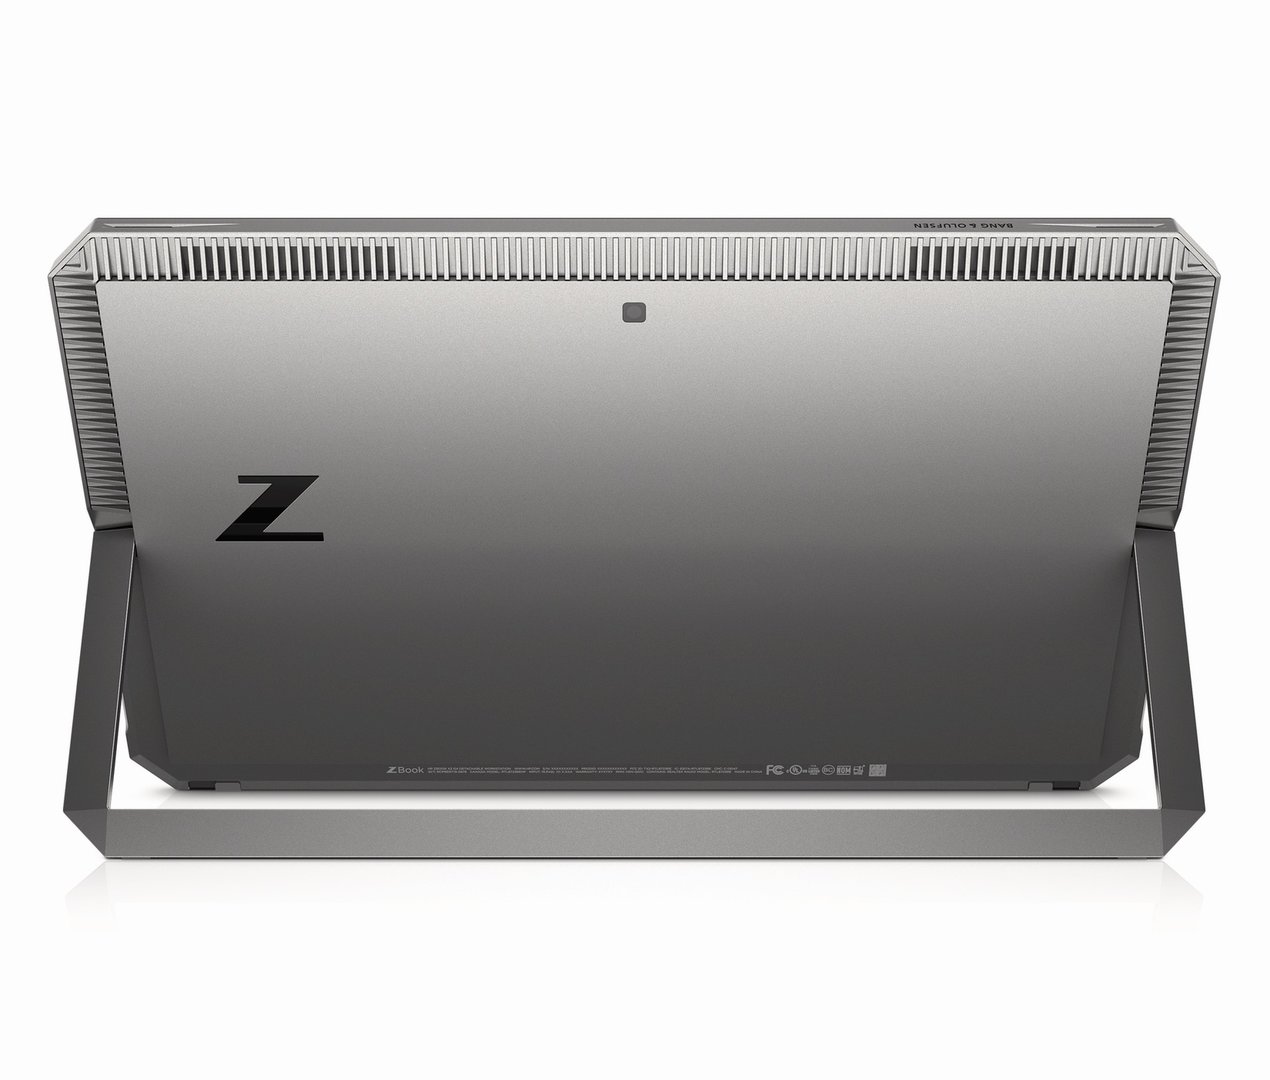 HP ZBook x2